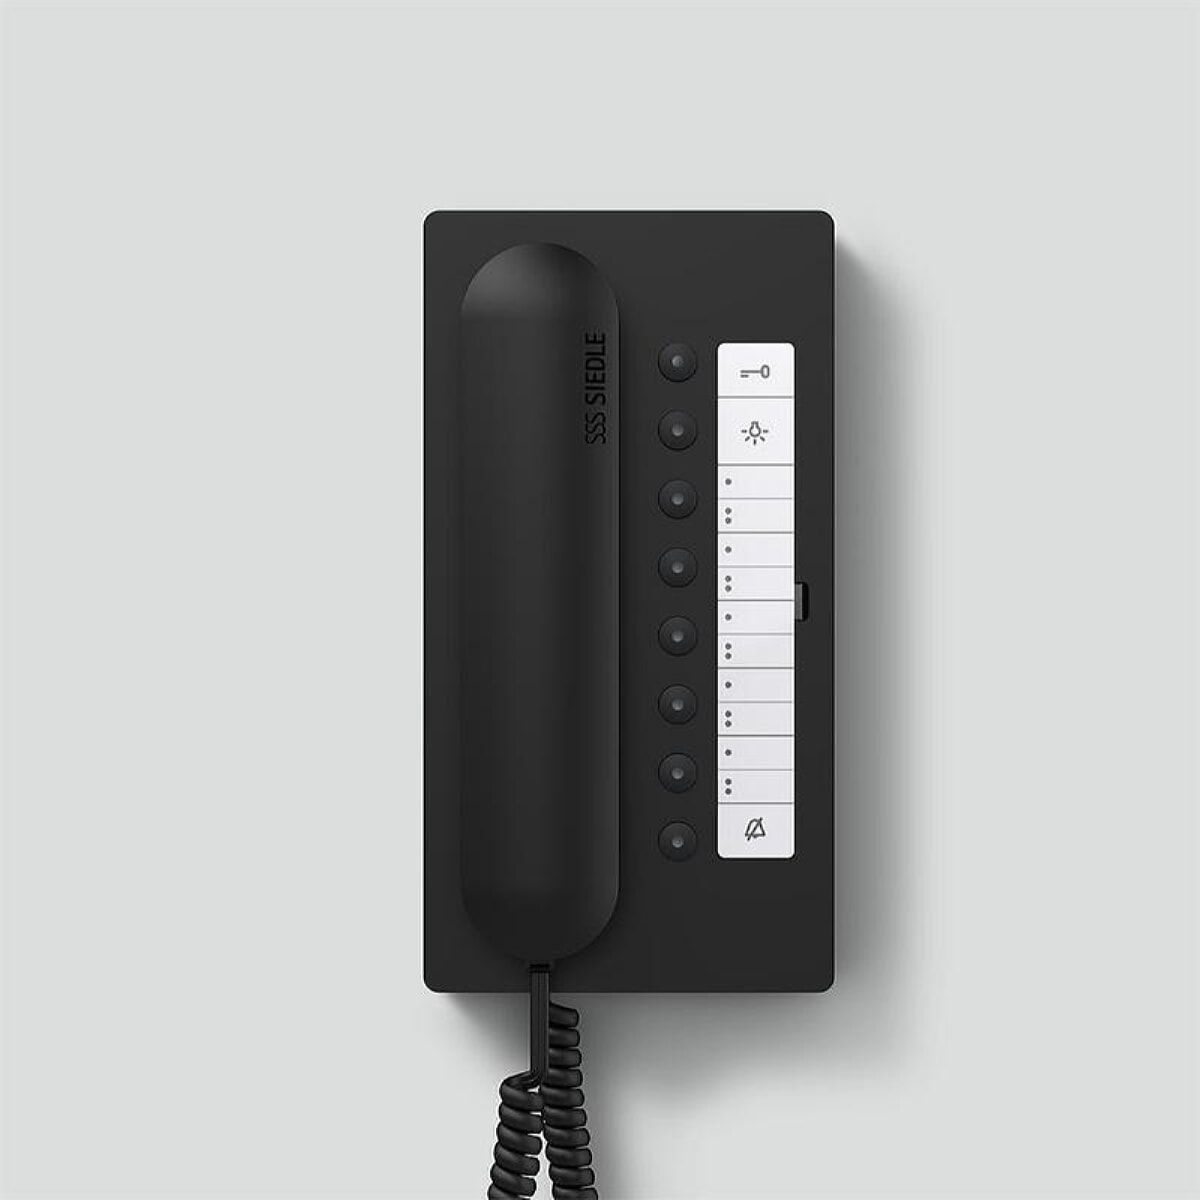 Siedle Haustelefon BTC 850-02 S schwarz